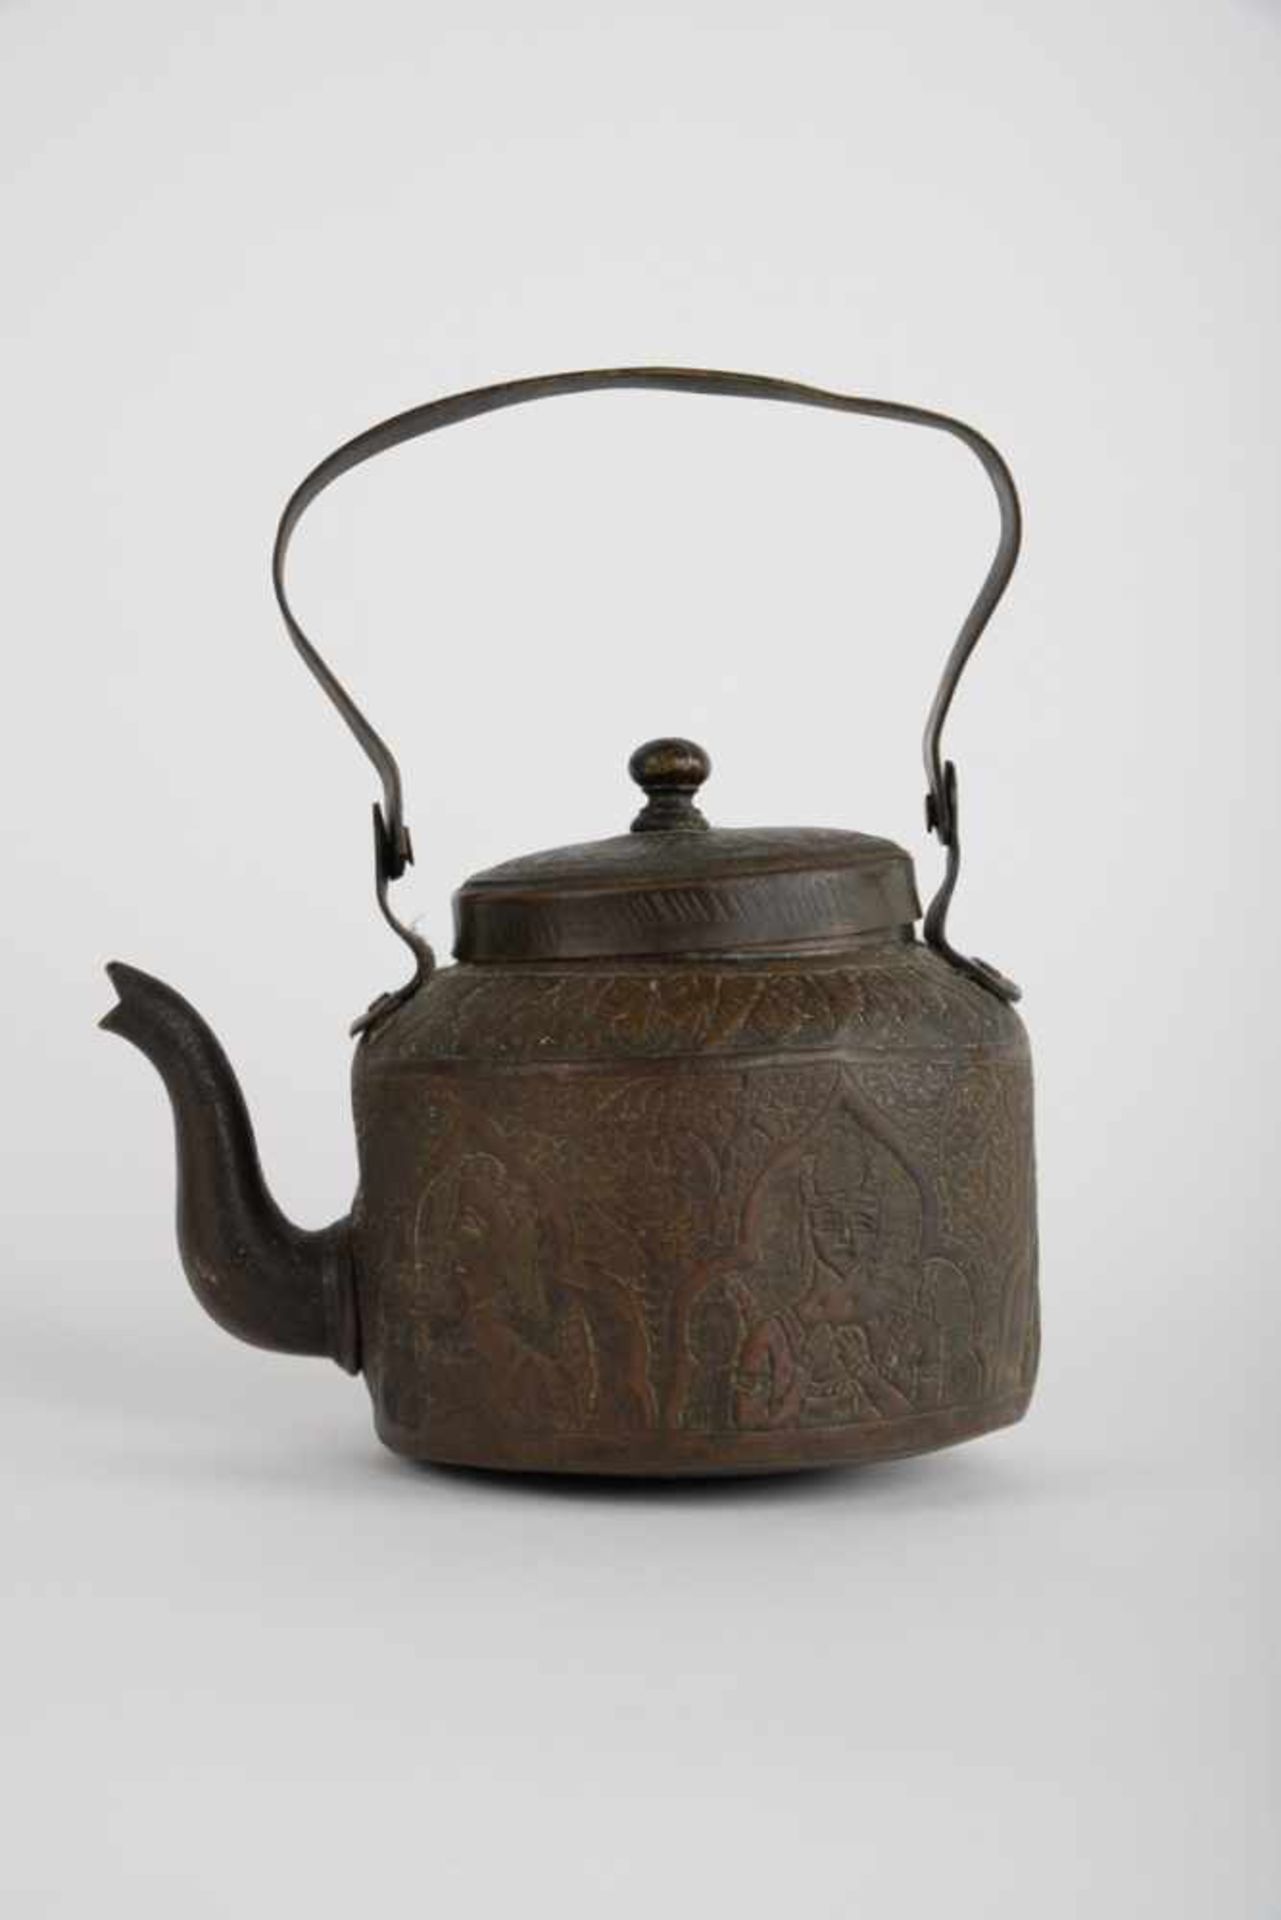 Teekessel. Asien / Indien. Bronze, umlaufend mit traditionellem Asia-Dekor graviert. Maße ca. 19 x